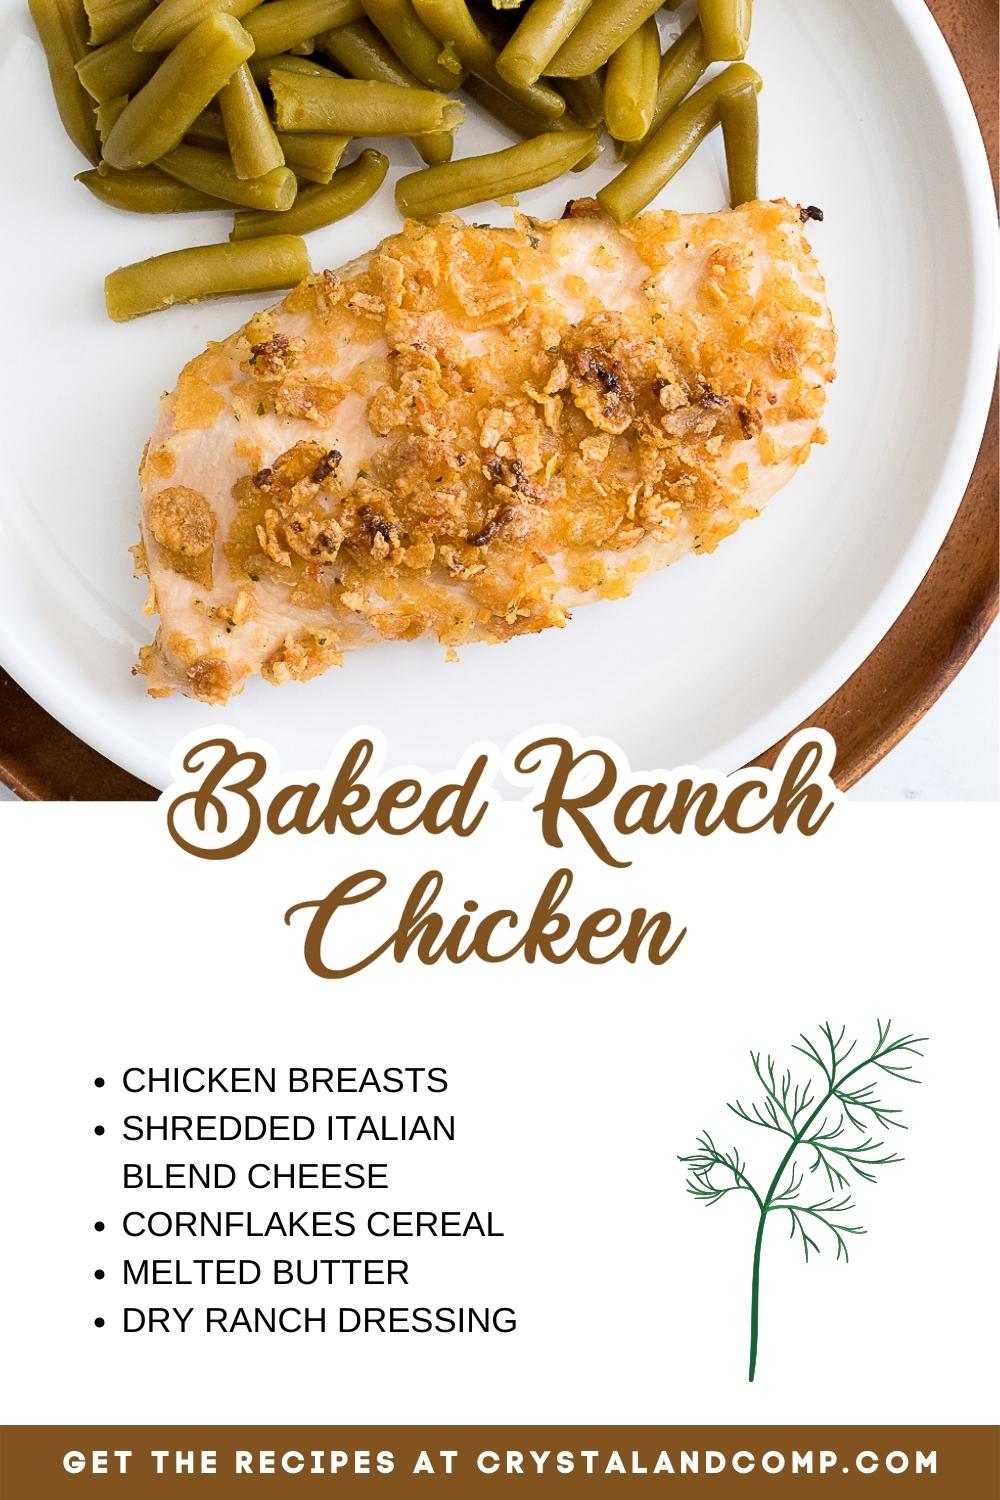 baked ranch chicken ingredient list